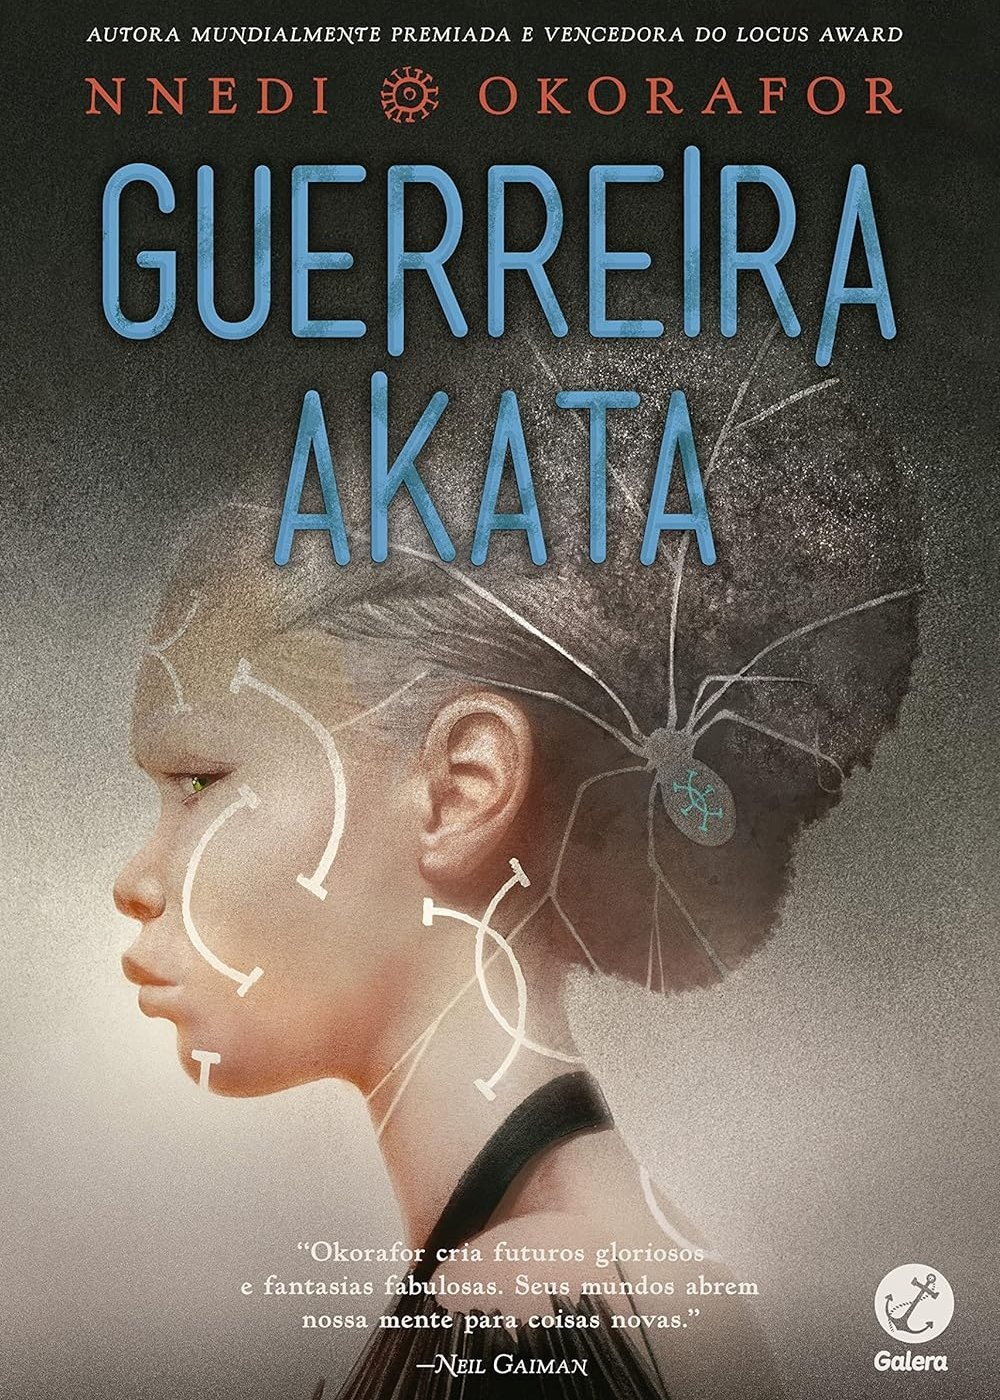 Guerreira Akata (Vol. 2), de Nnedi Okorafor - leitura - livros de autores negros - livros - dicas - https://stealthelook.com.br